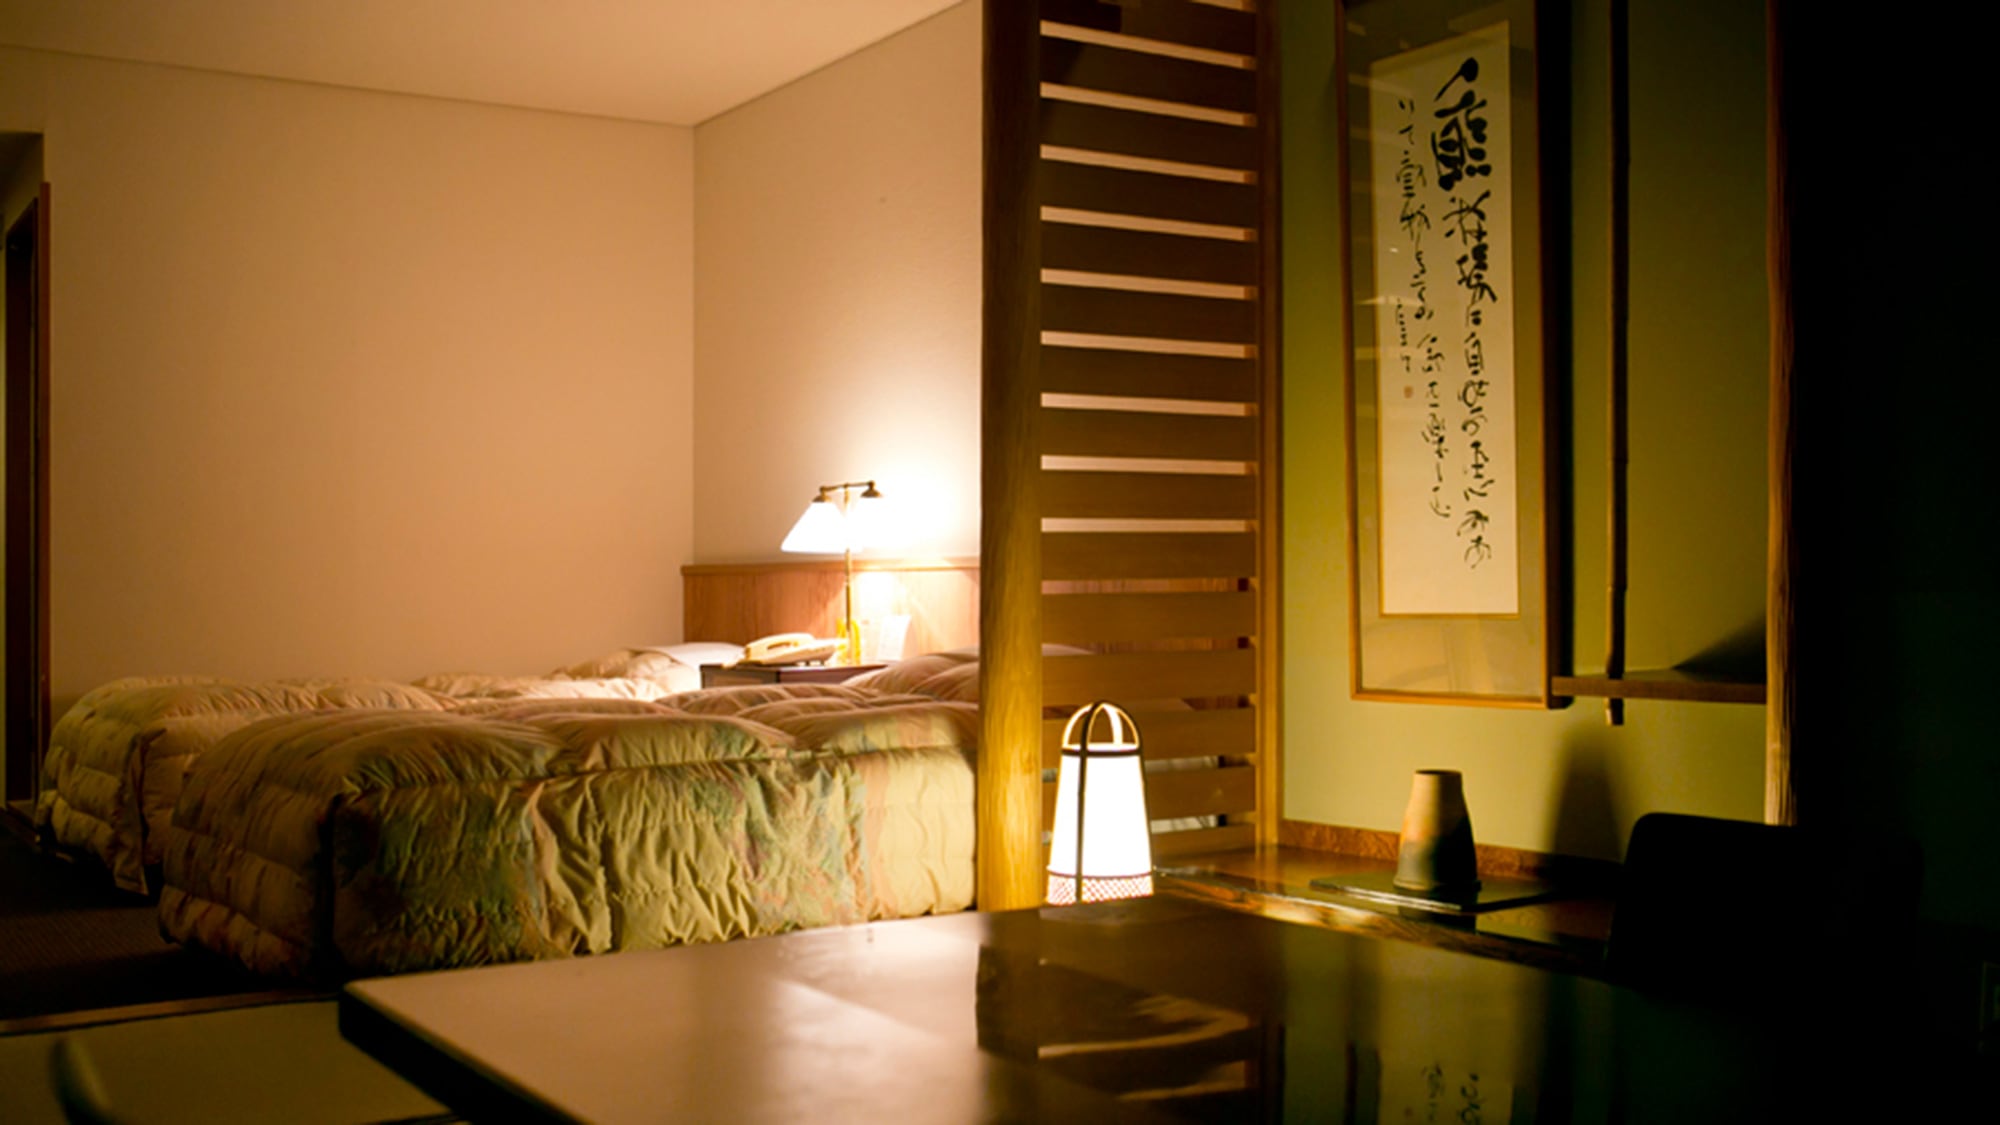 晚上的日式和西式房間